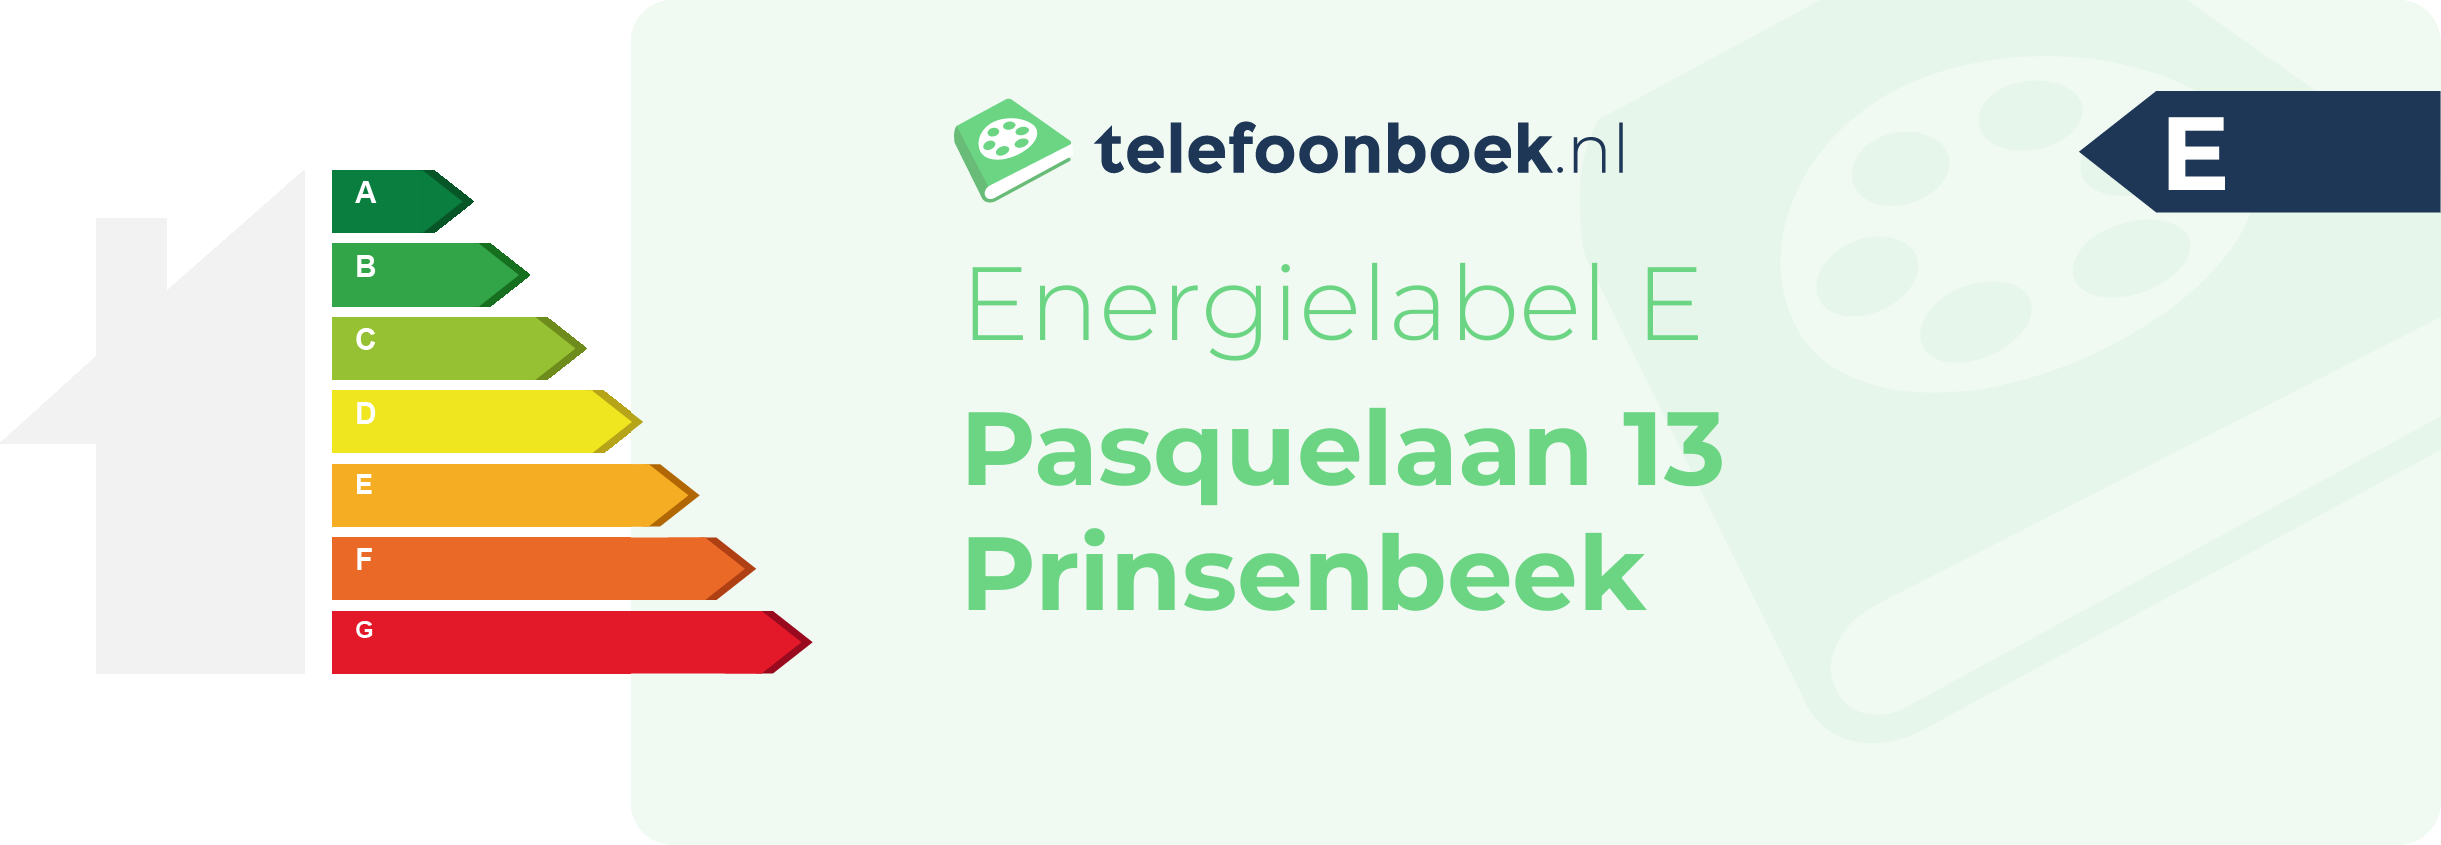 Energielabel Pasquelaan 13 Prinsenbeek